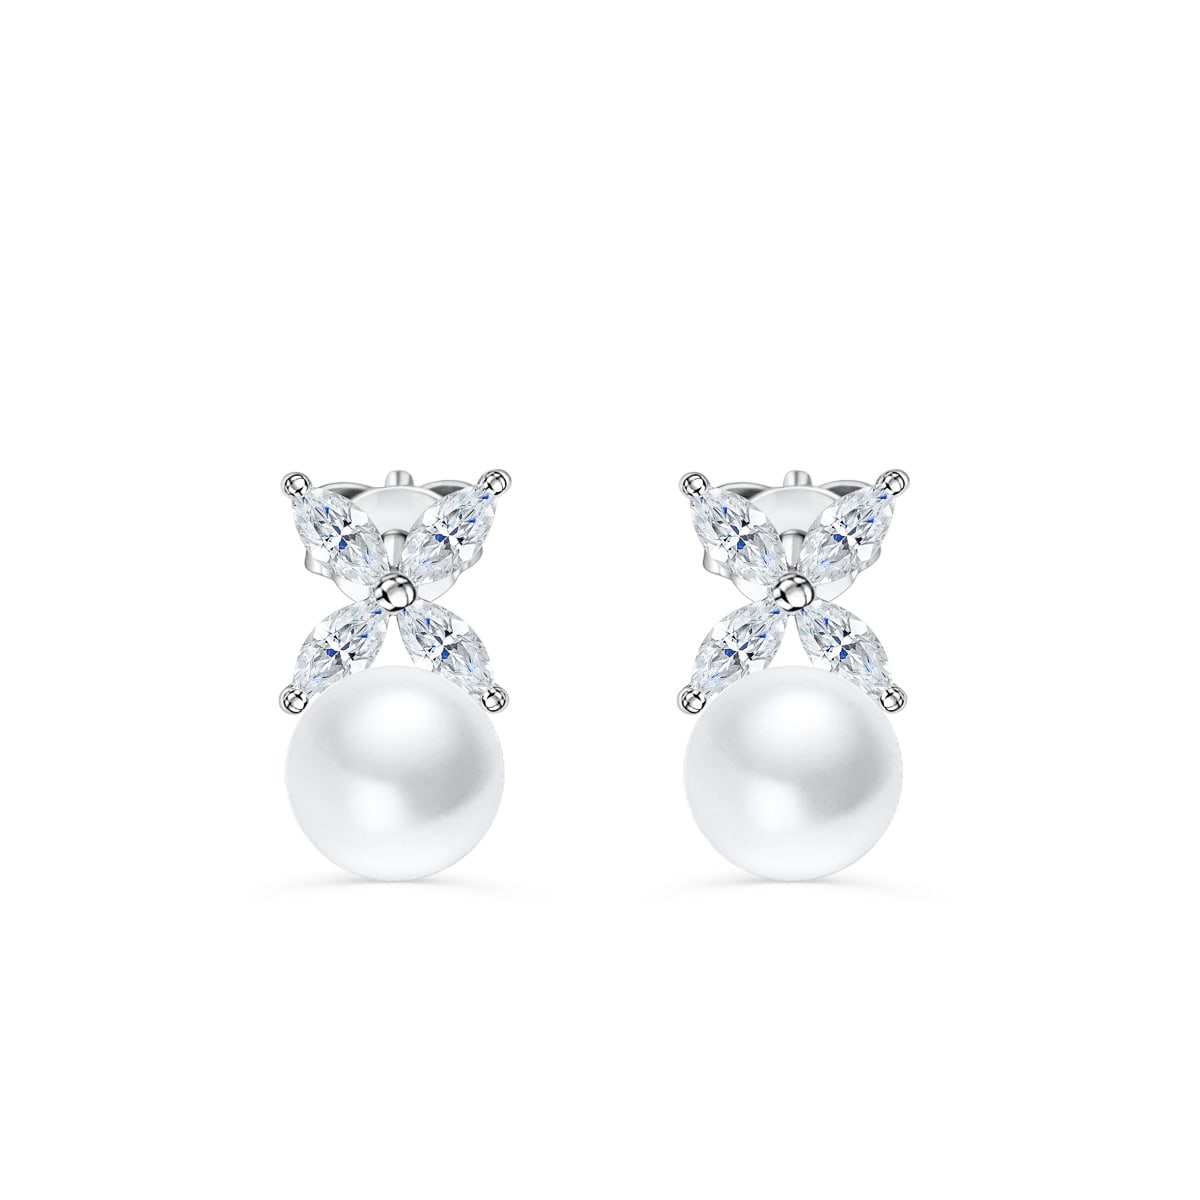 the ariel pearl earrings